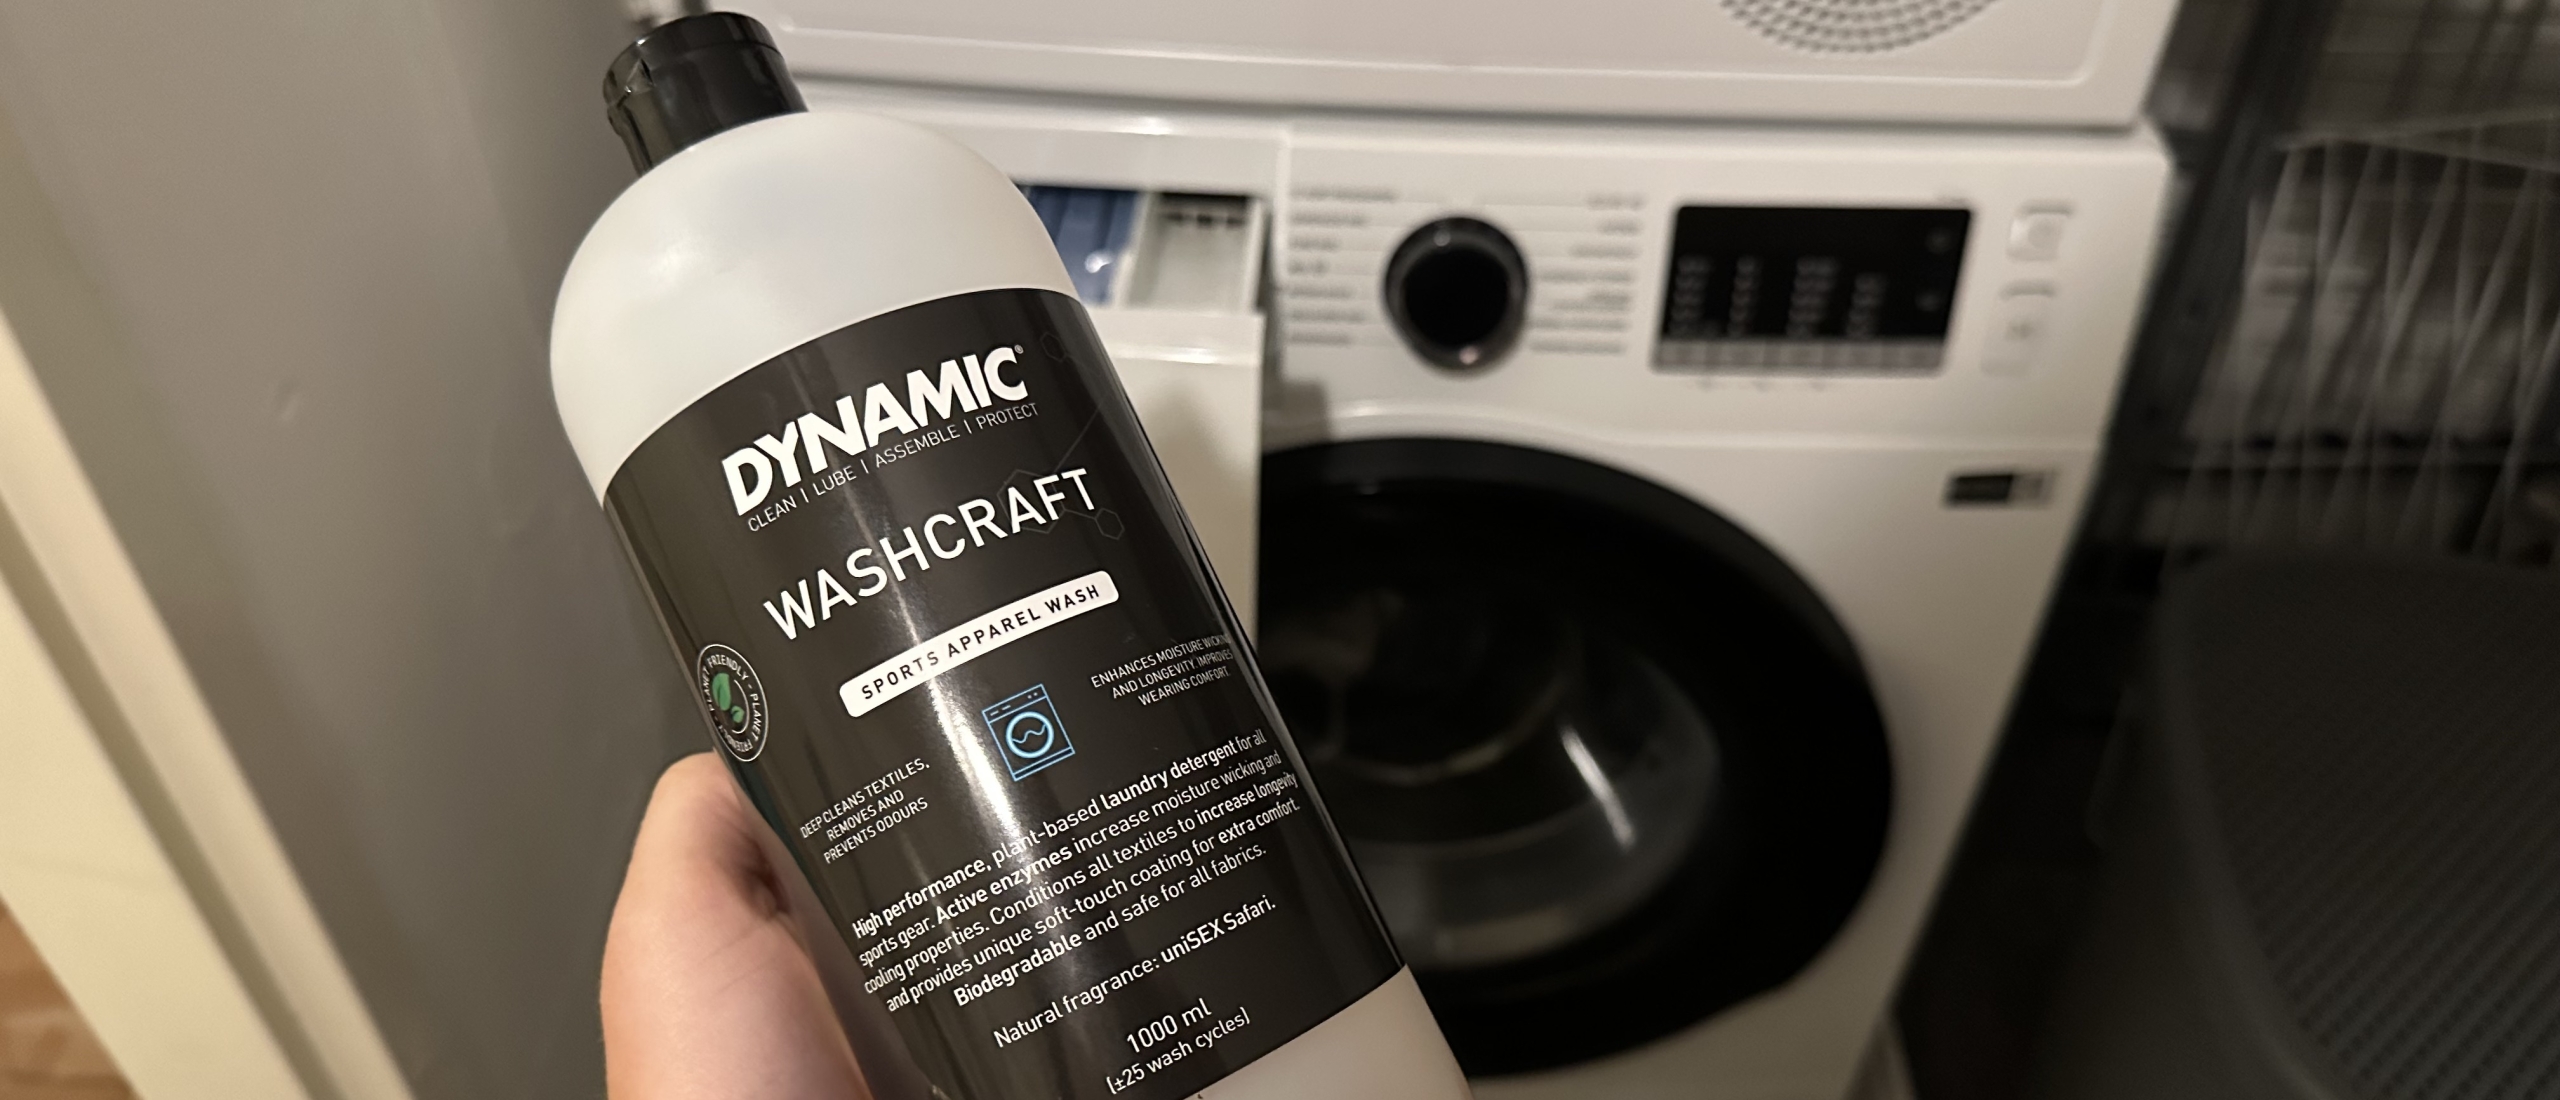 Maak kennis met Washcraft; wasmiddel voor fietskleding (win!)